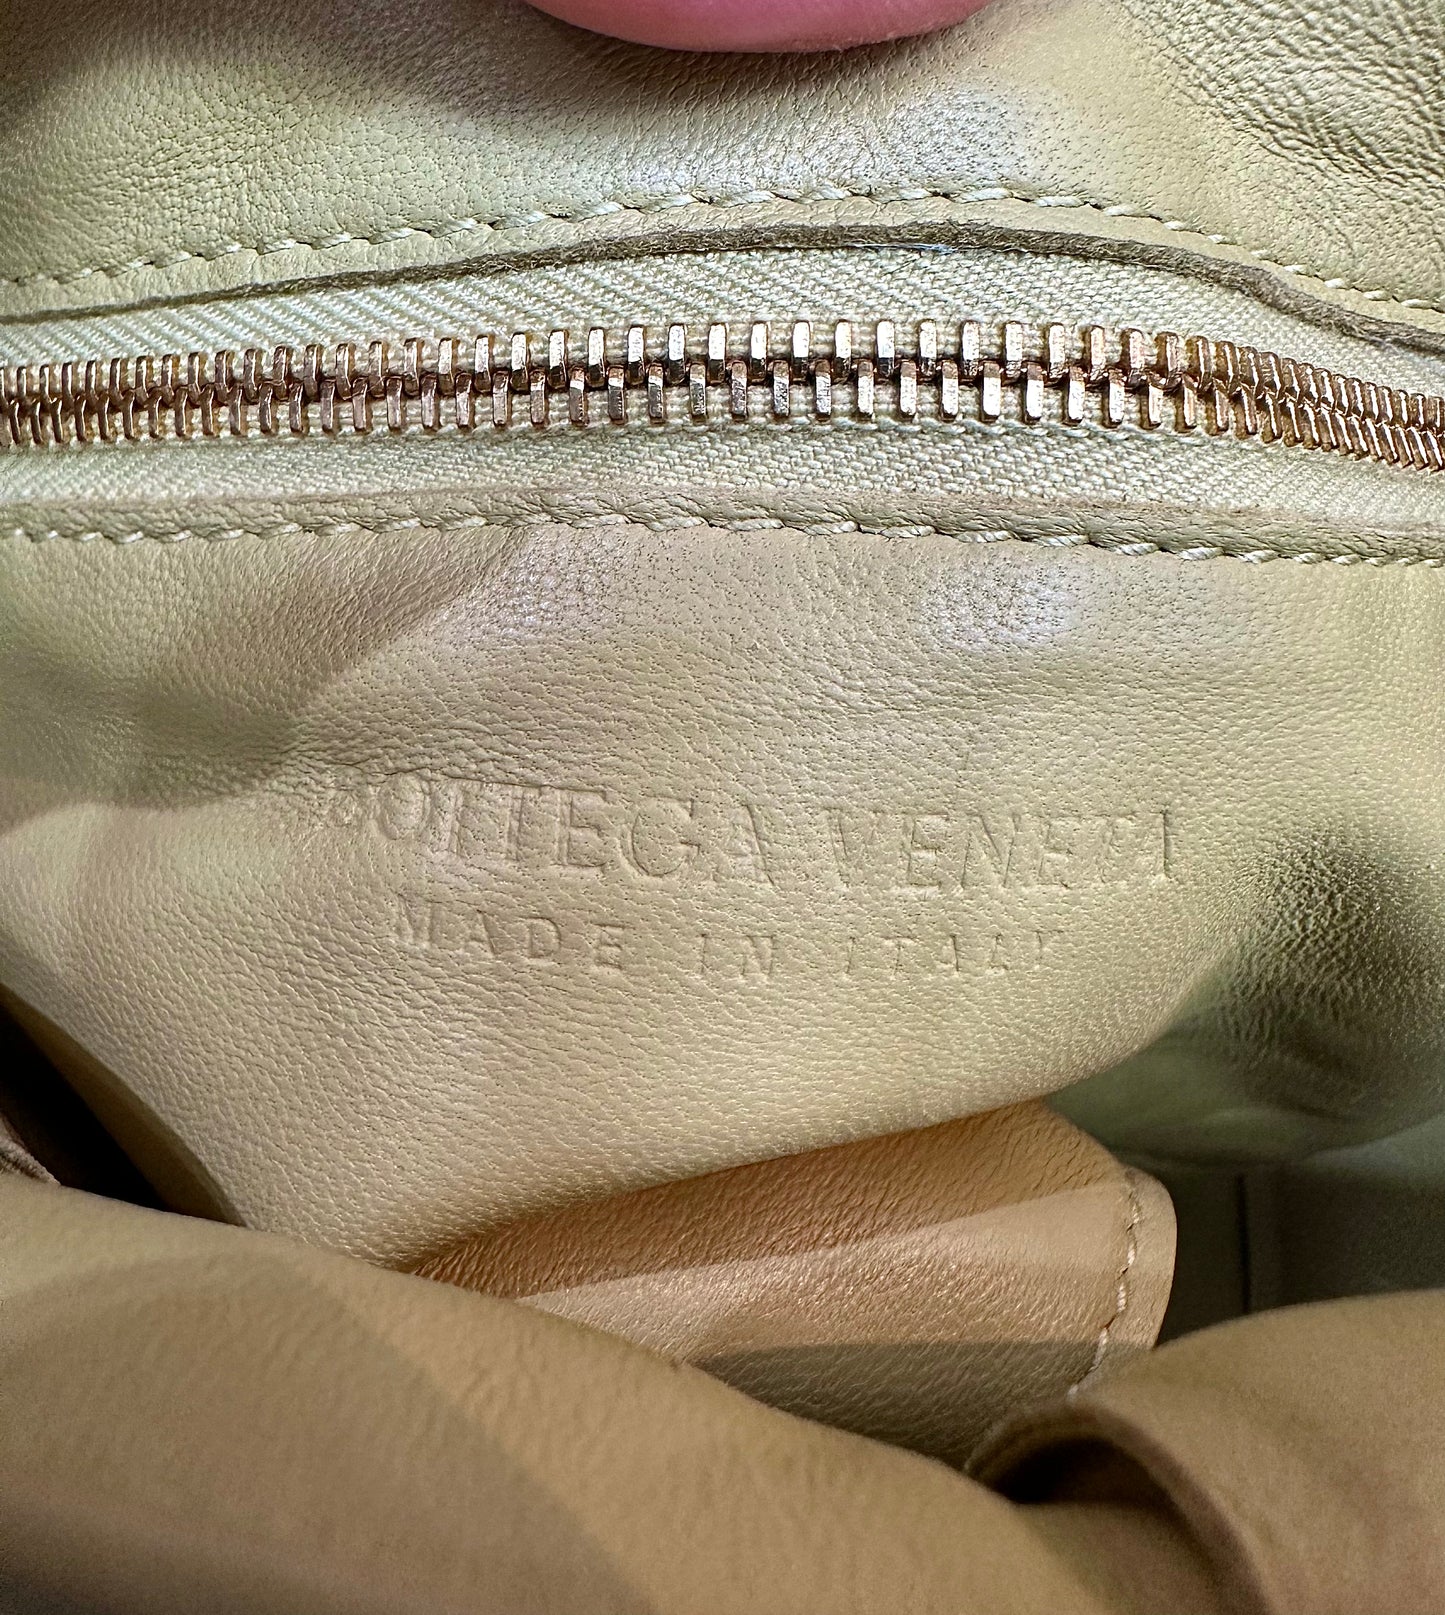 Bottega Veneta leather logo inside bag